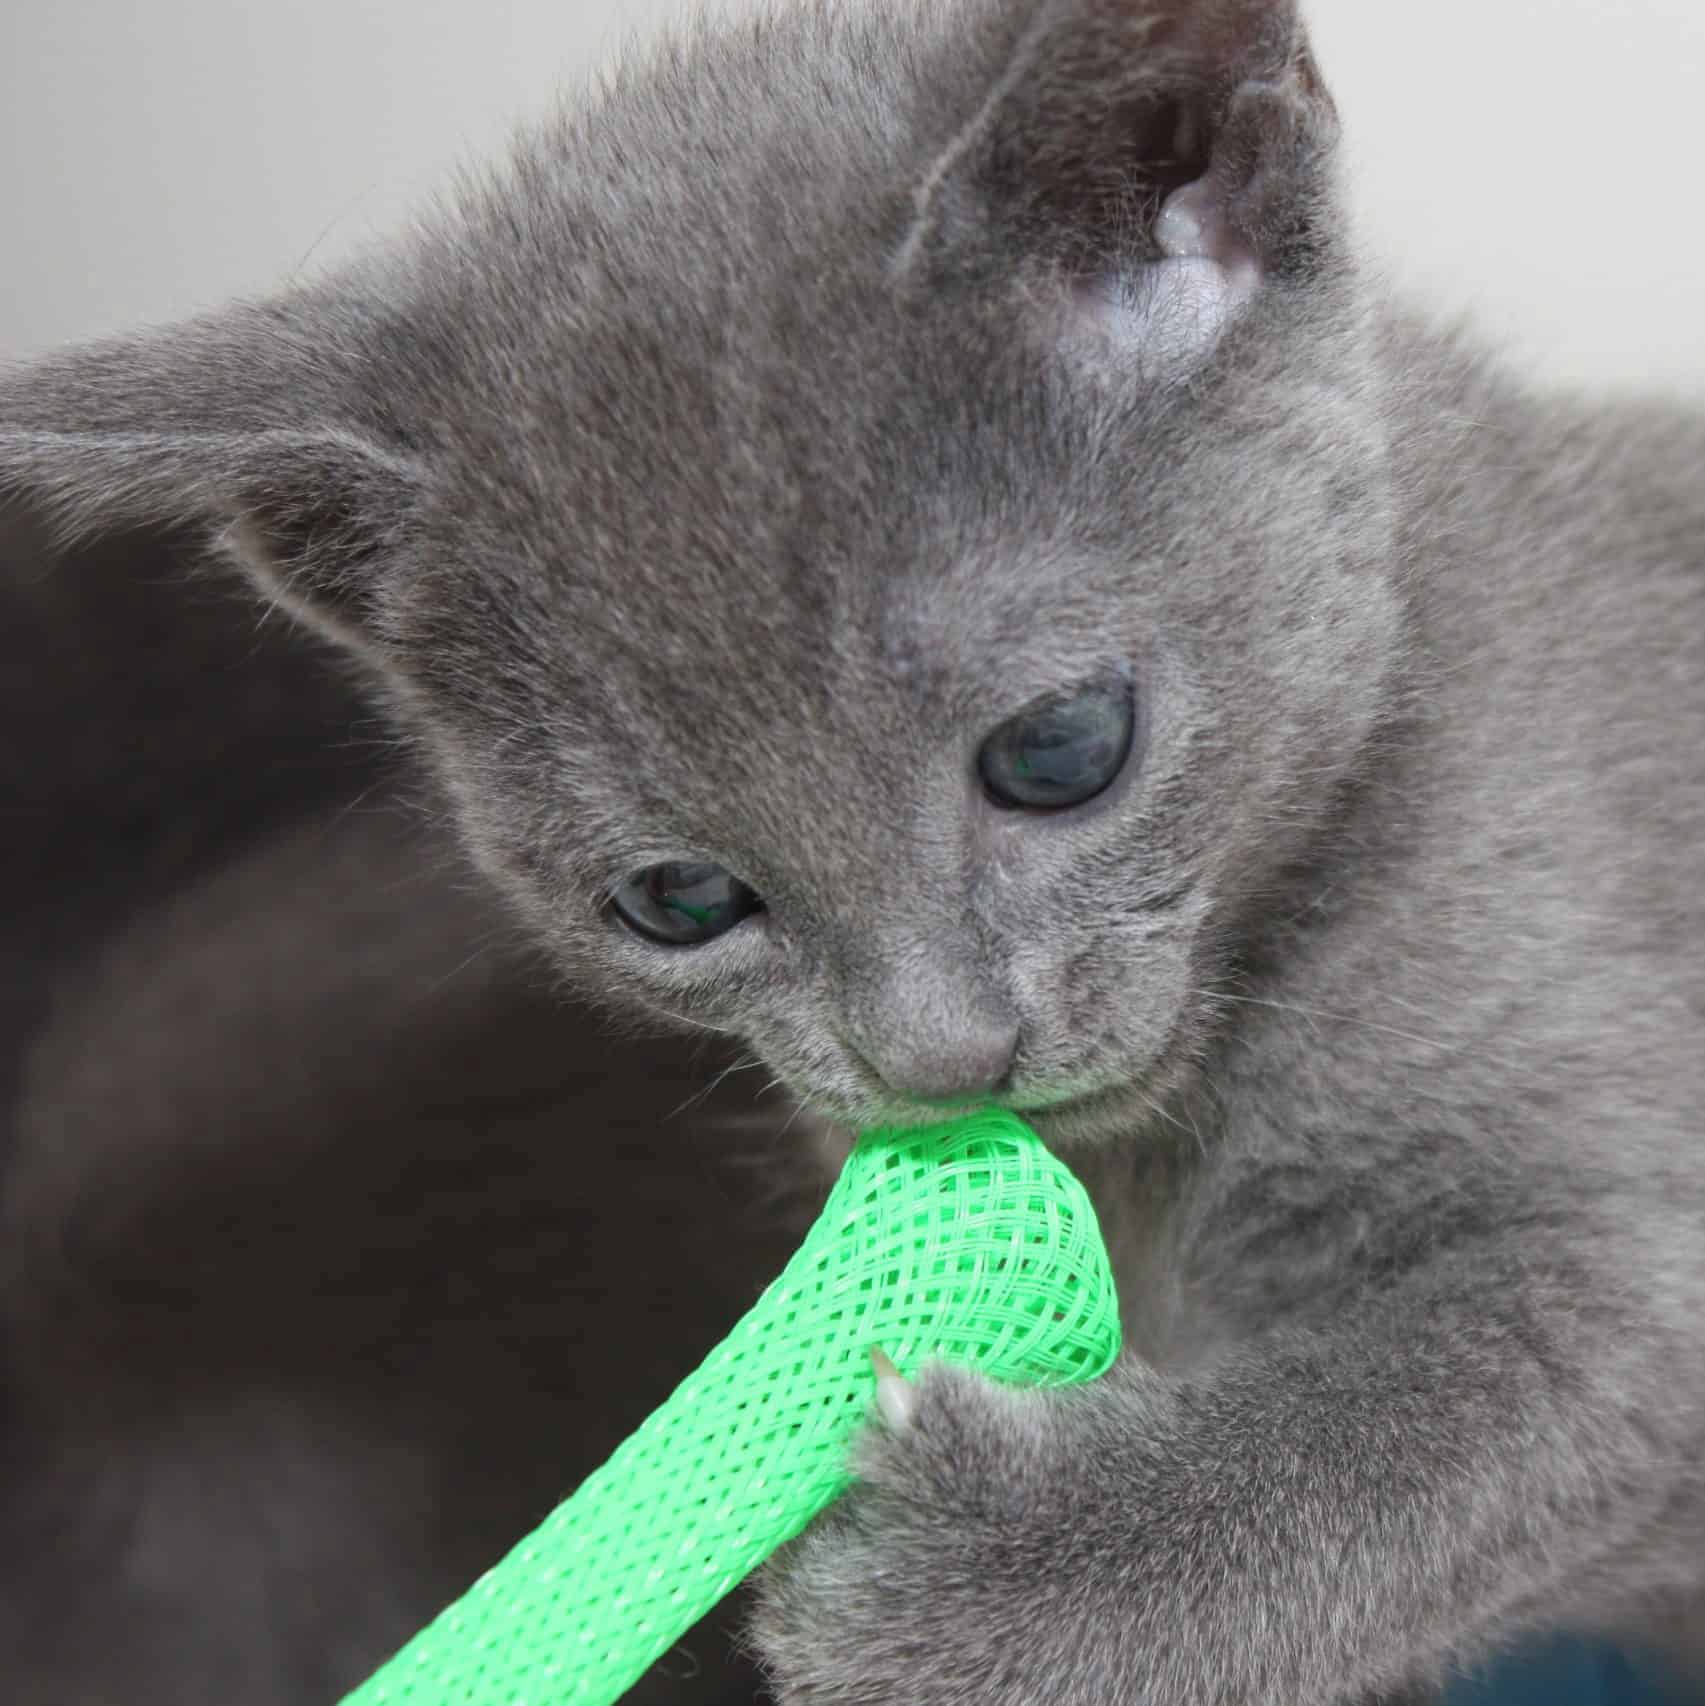 En Russian Blue kattunge i närbild så att man ser huvudet och ena tassen. Den leker med ett ljusgrönt nätrör som innehåller en glaskula. Kattungen håller nätröret med ena tassen och har fört röret till munnen.